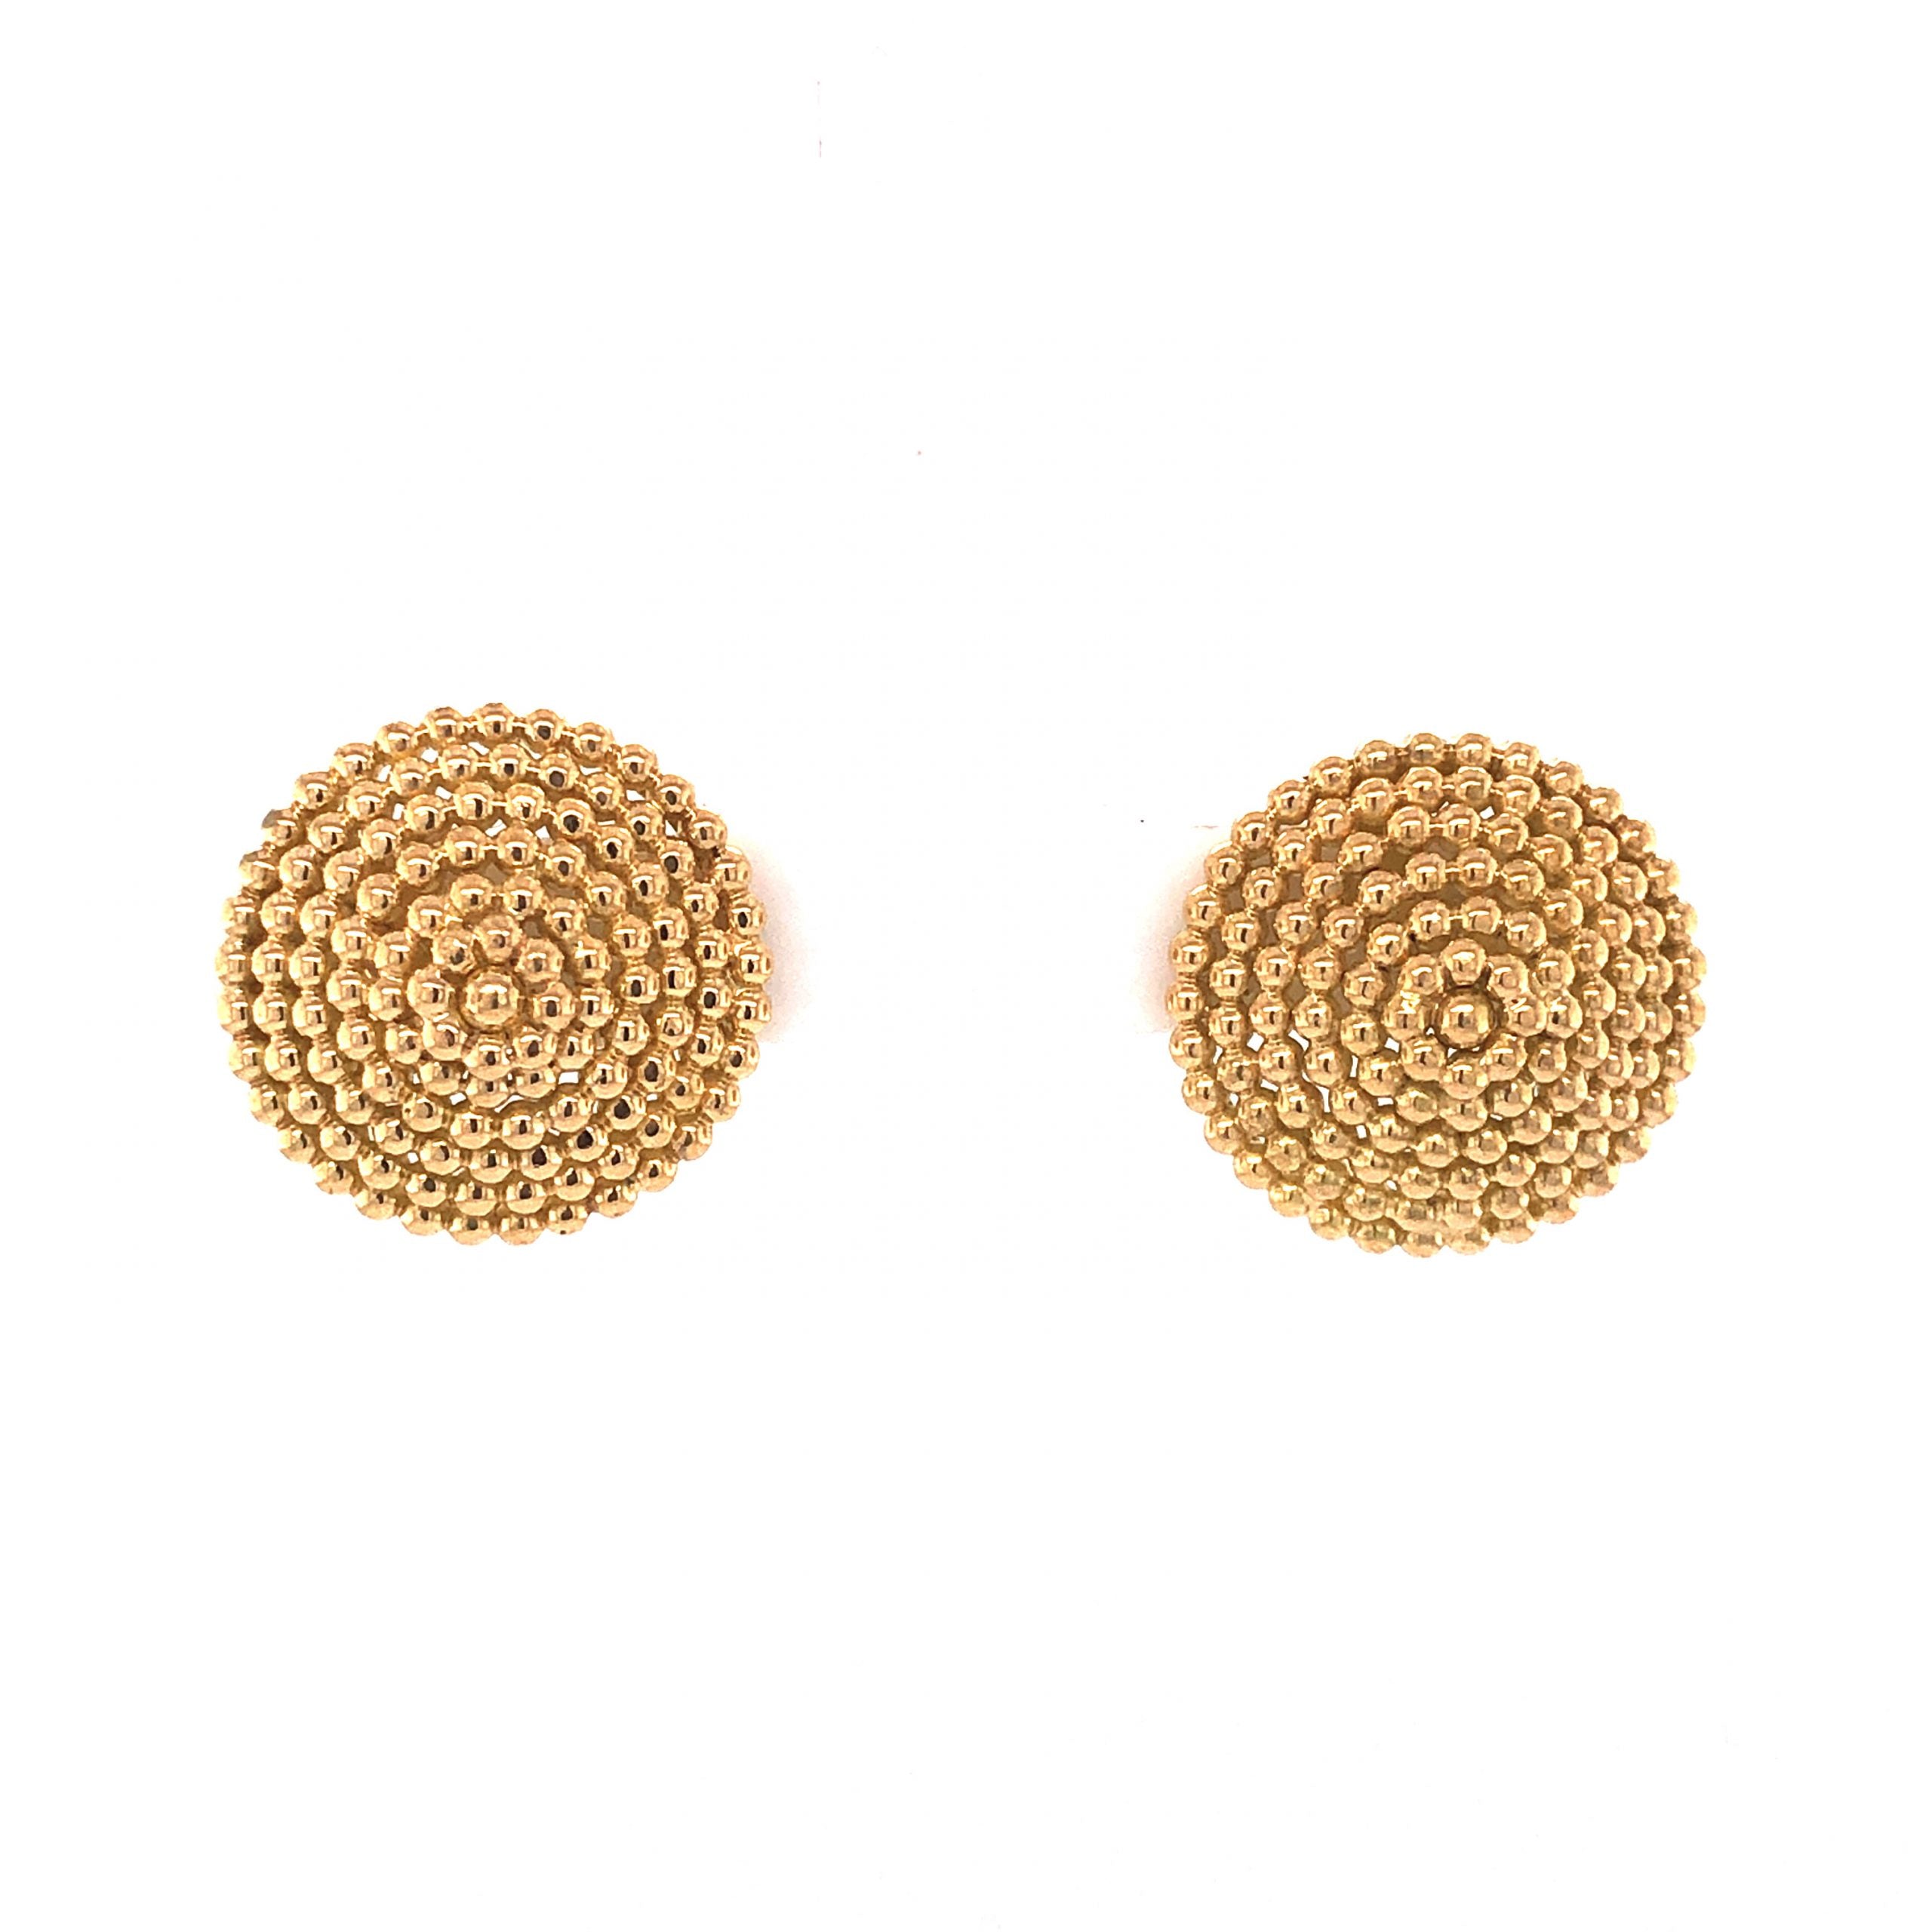 Gold Moissanite Stud Earrings - Round Design - 3 mm